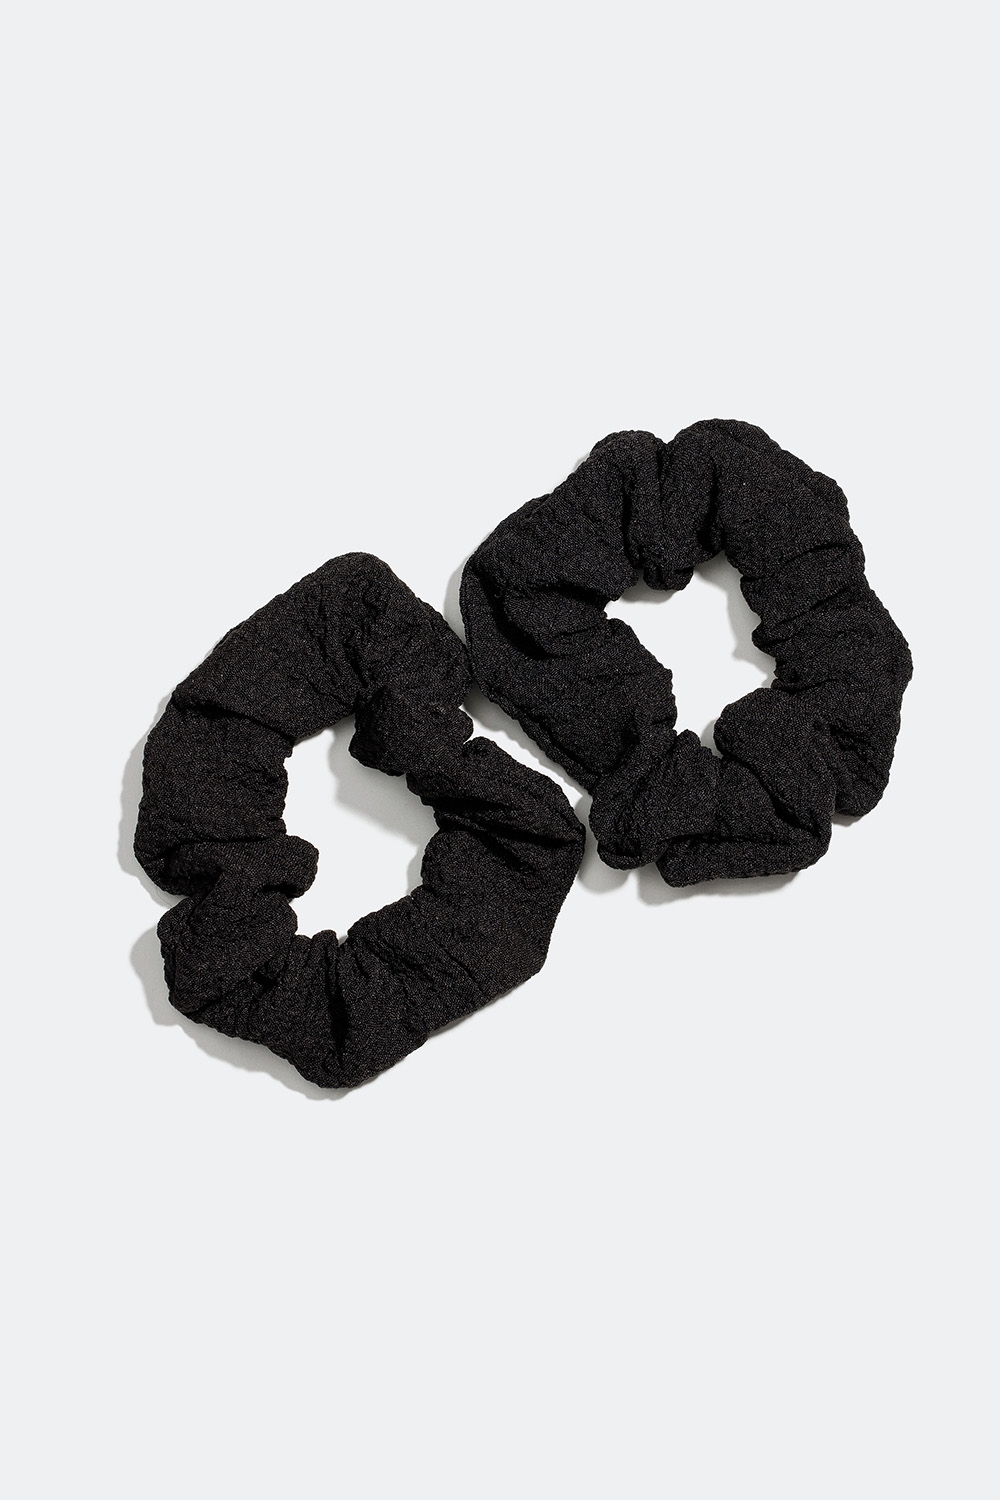 Små krinklade scrunchies i svart, 2-pack i gruppen Håraccessoarer / Scrunchies / Flerpack hos Glitter (332000669000)